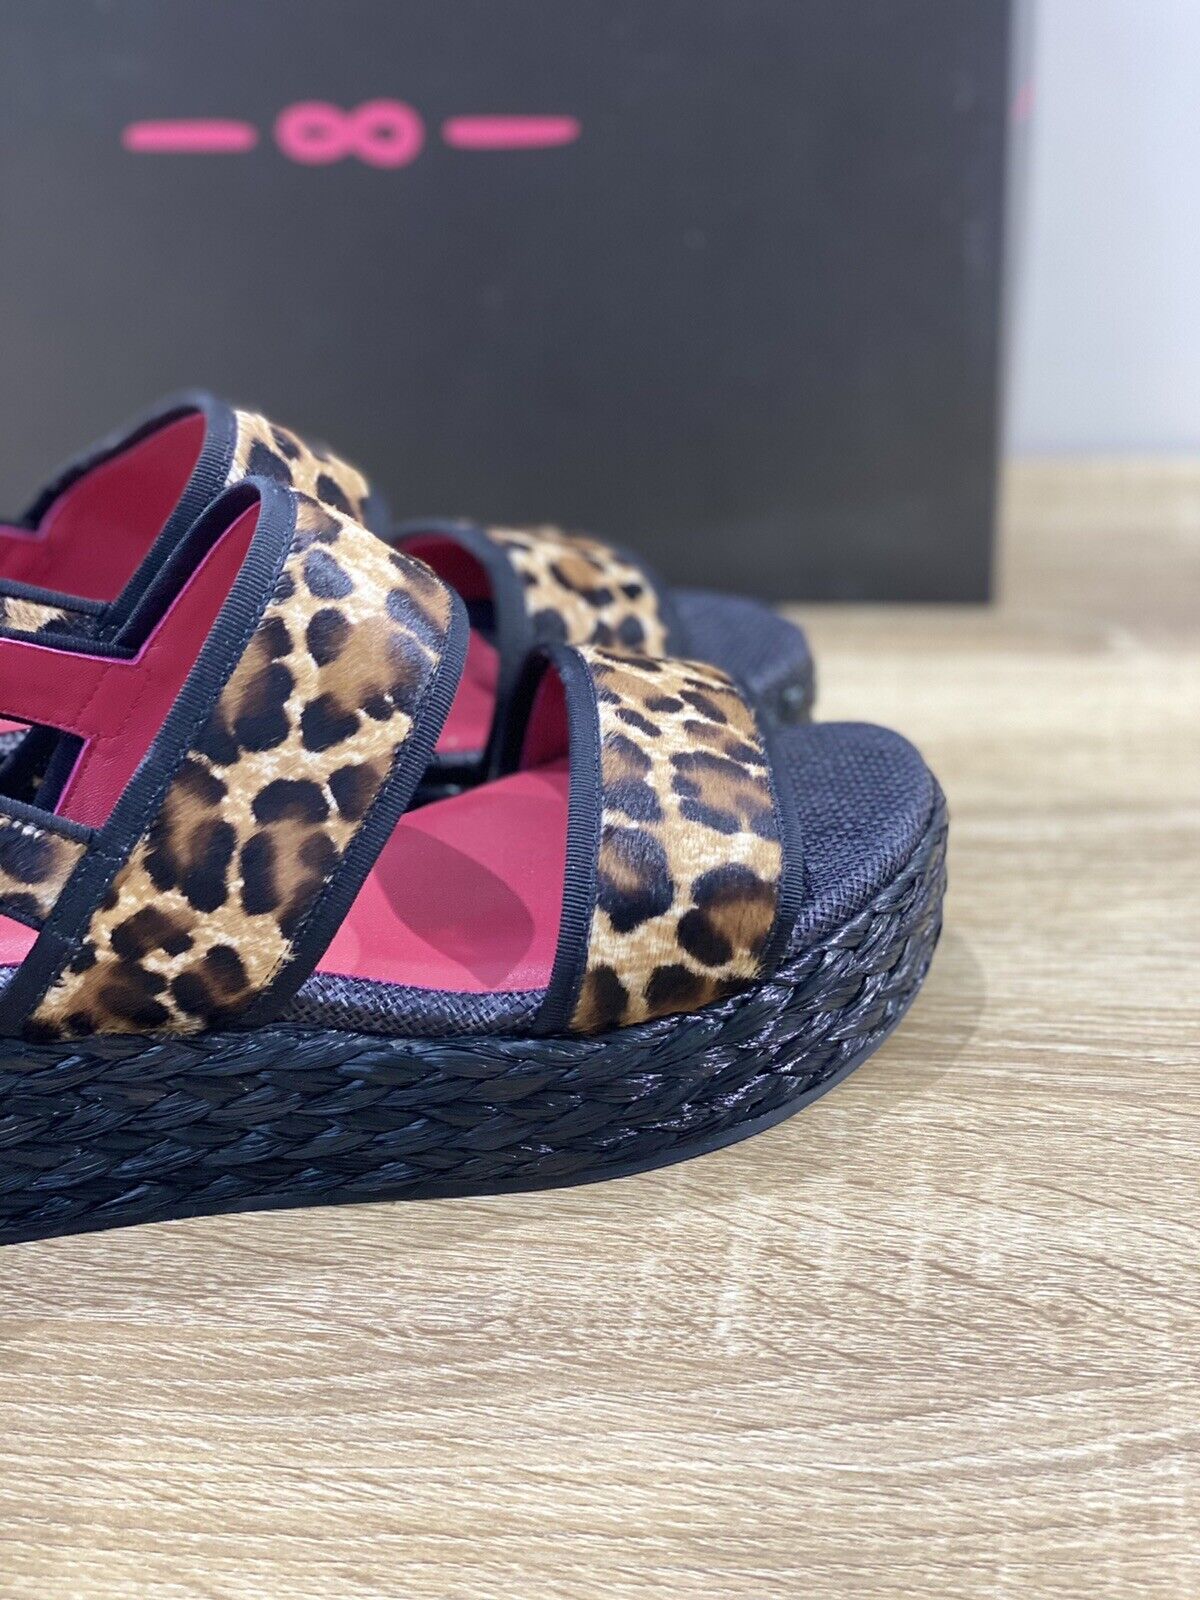 181 Sandalo donna Zeppa Cavallino Leopard  luxury sandal 38